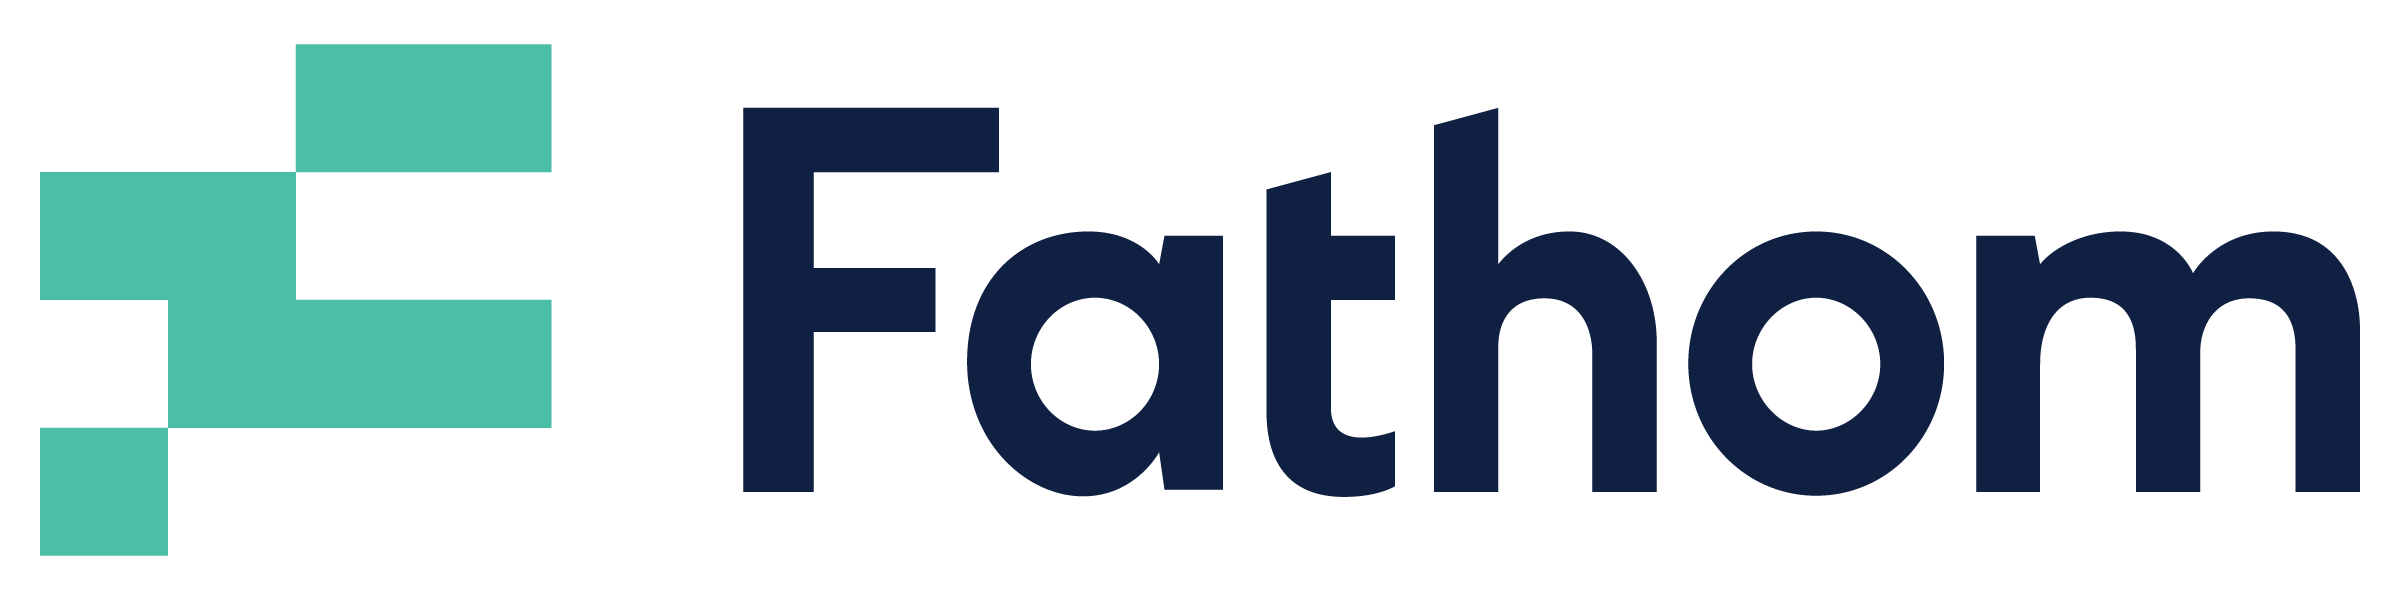 Fathom logo 1